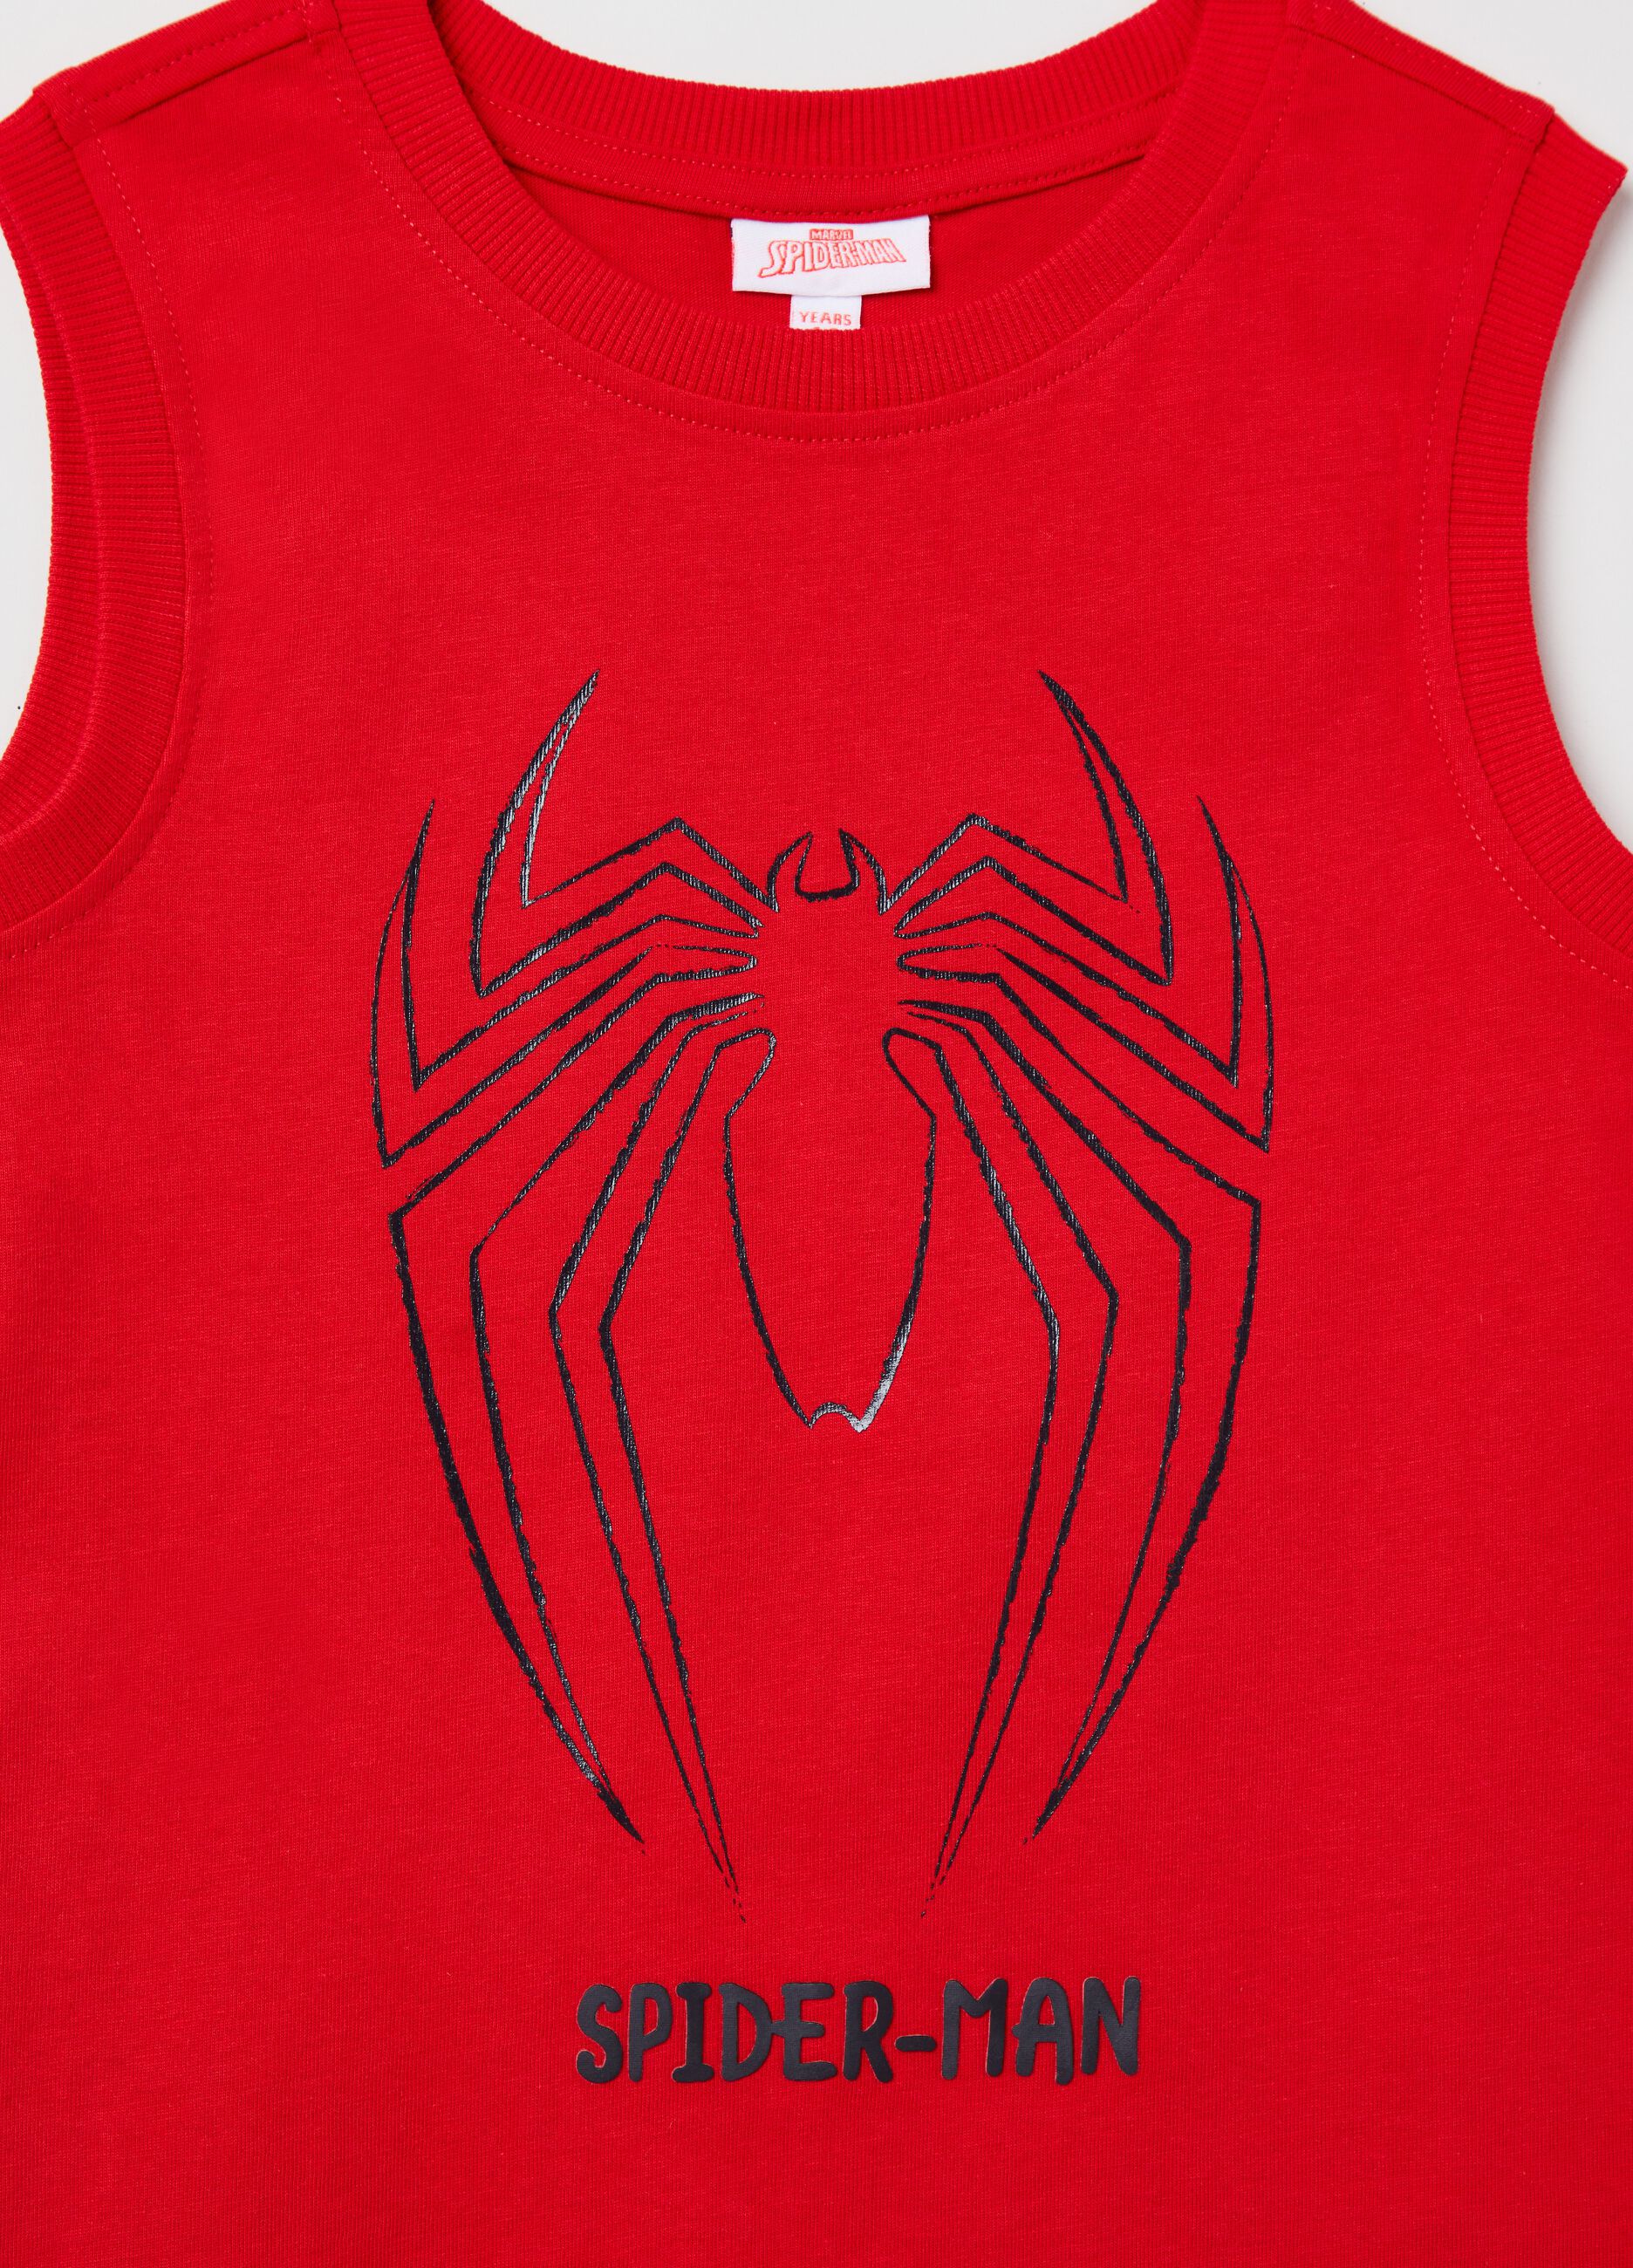 Racerback vest with Marvel Spider-Man print